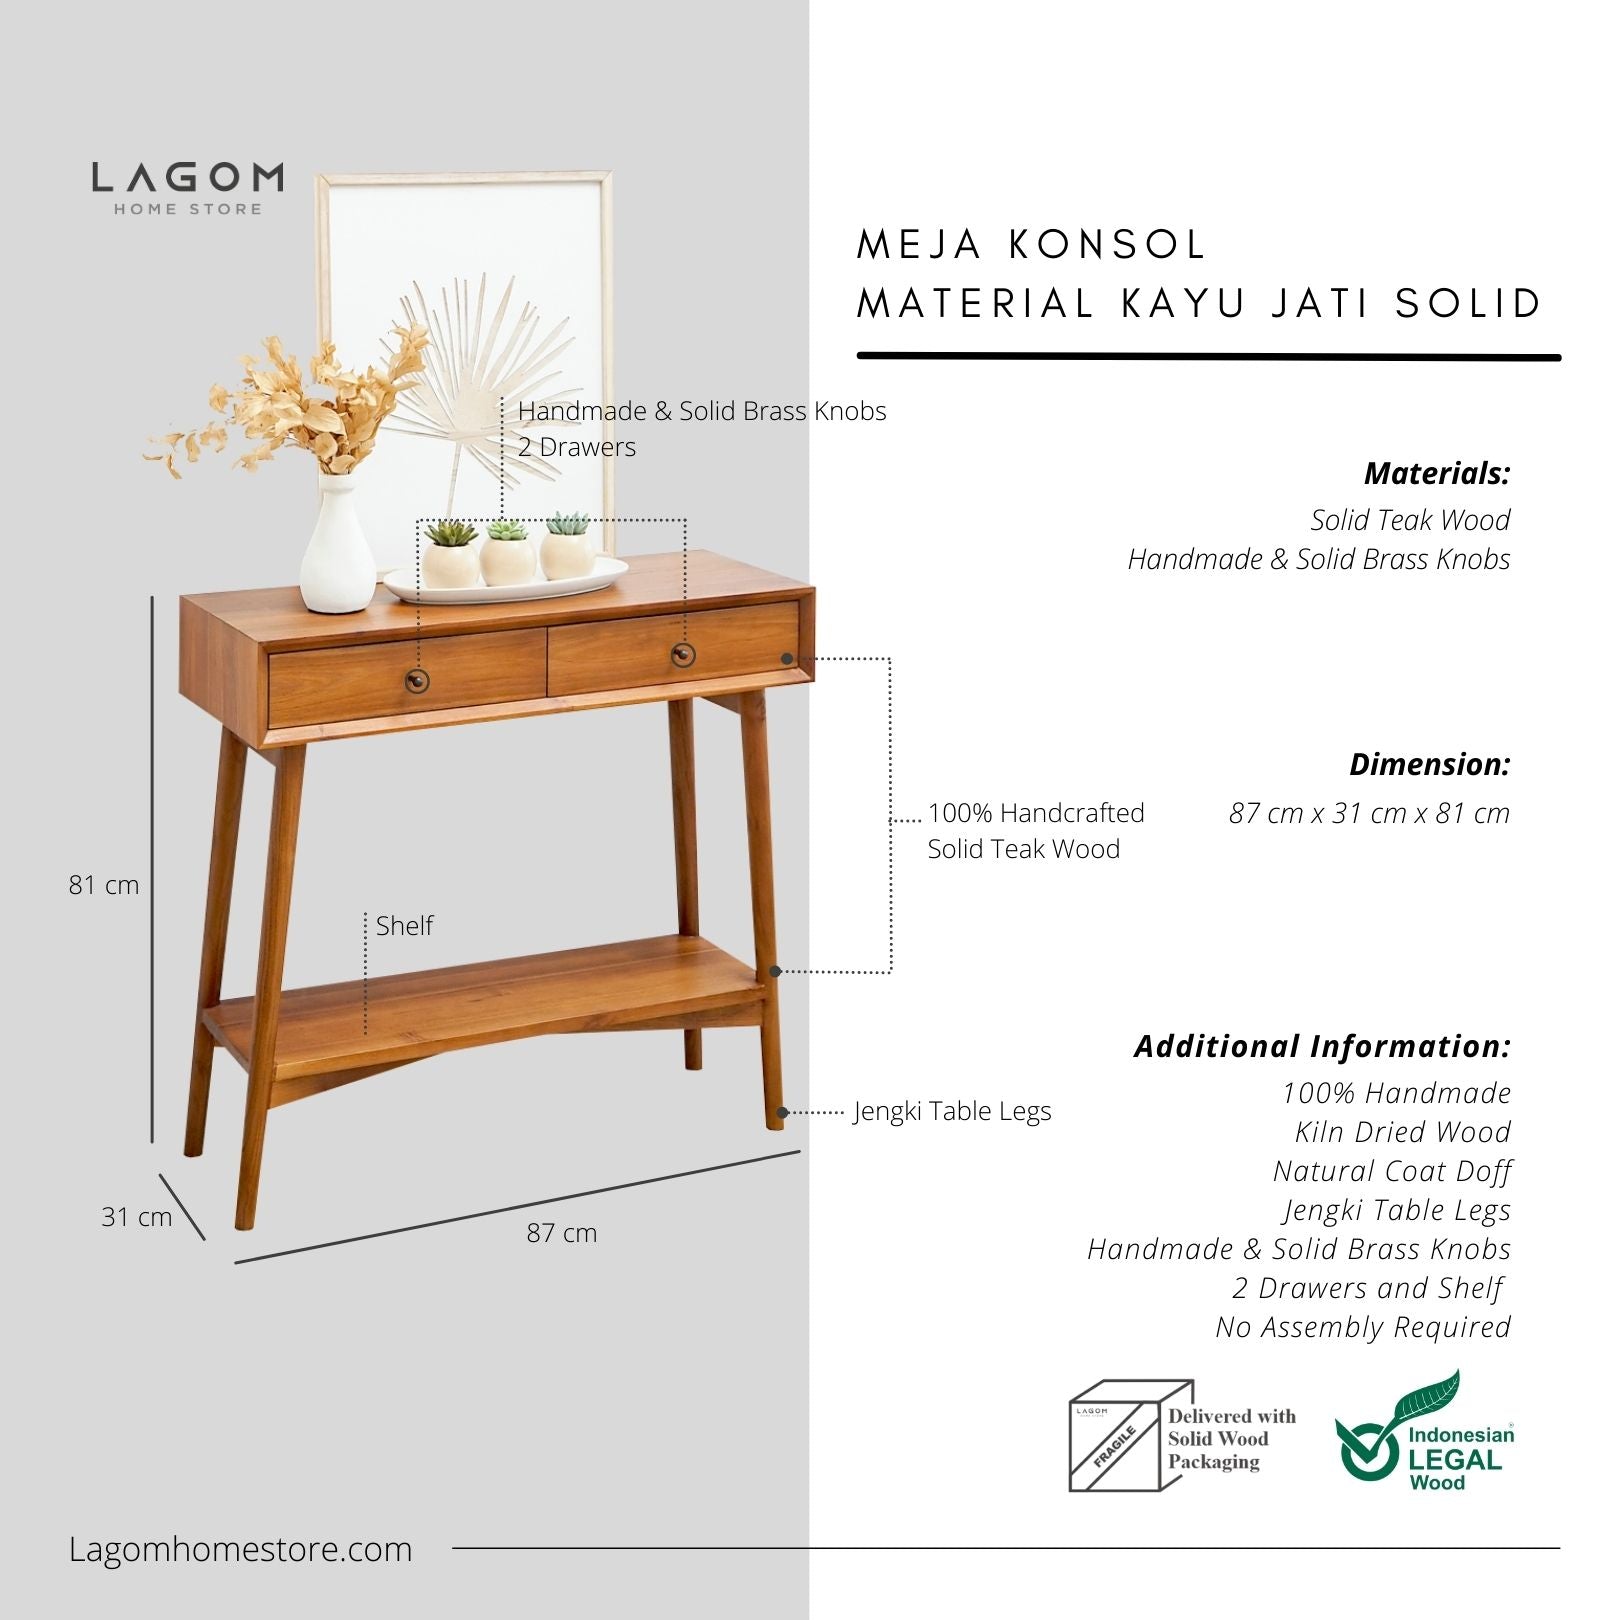 Meja Konsol Dua Laci dari Kayu Jati Solid Console Table Lagom Home Store Jati Furnitur Teak Furniture Jakarta